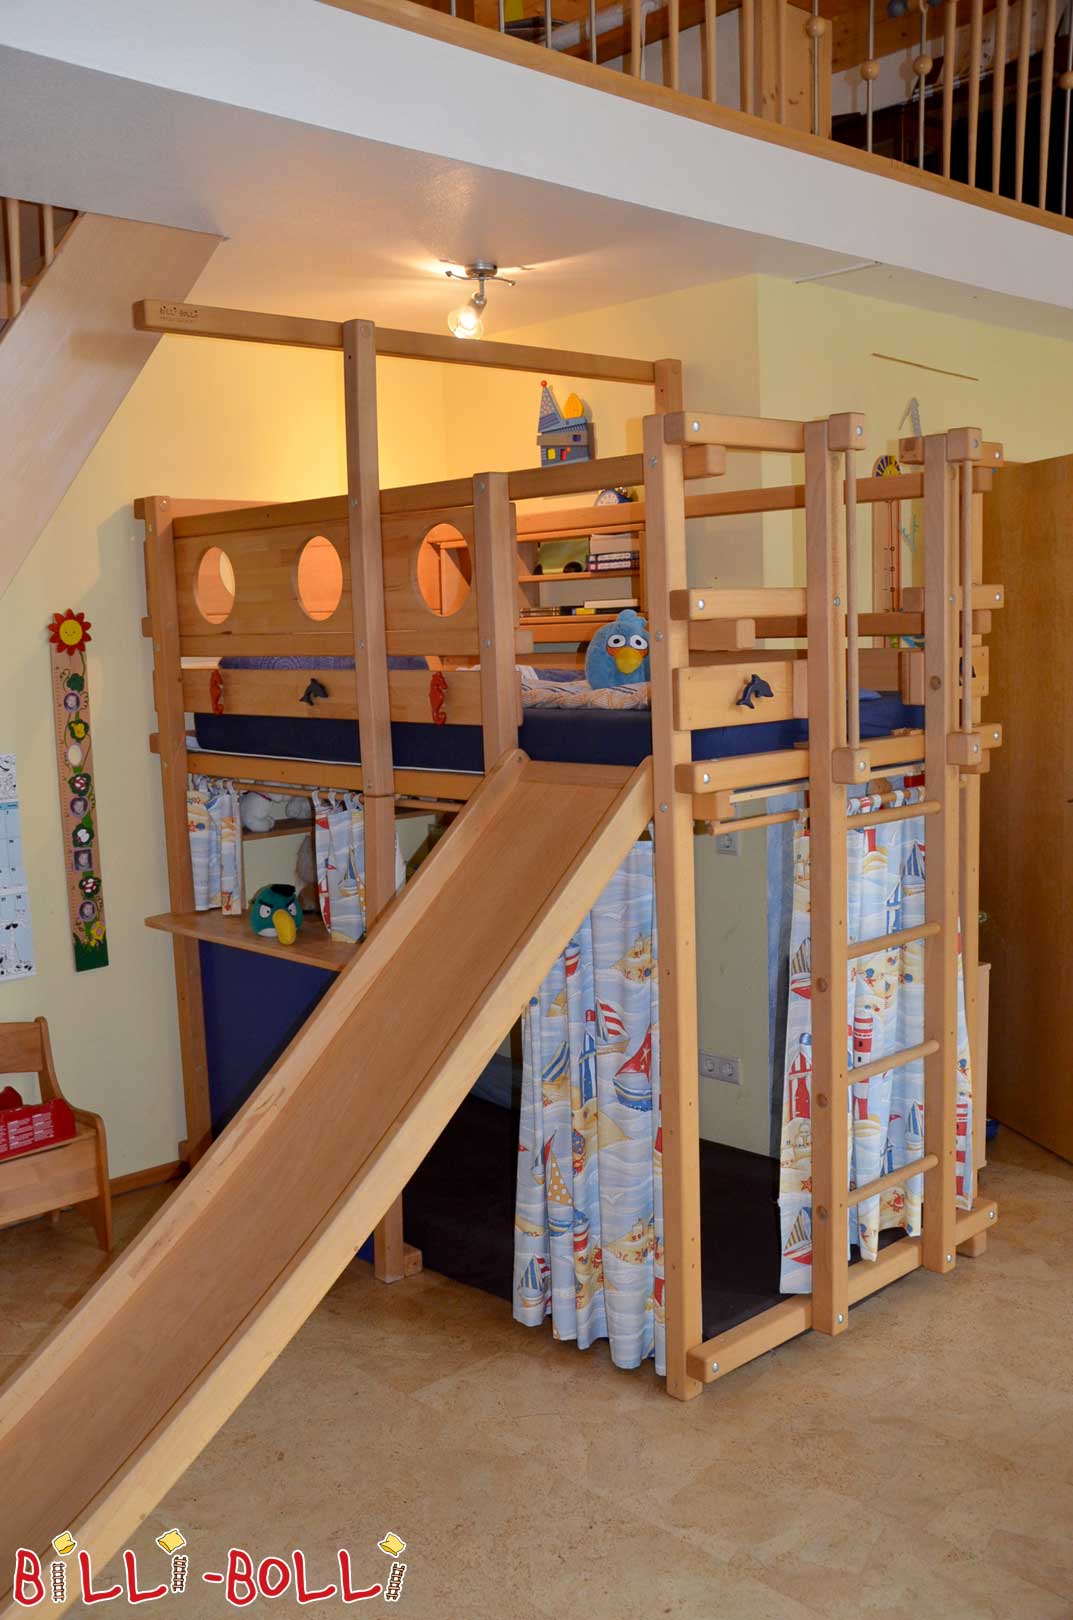 Piratų palėpės lova, pagaminta iš buko su skaidrėmis ir urvas su užuolaidomis (Palėpės lova auga kartu su vaiku)